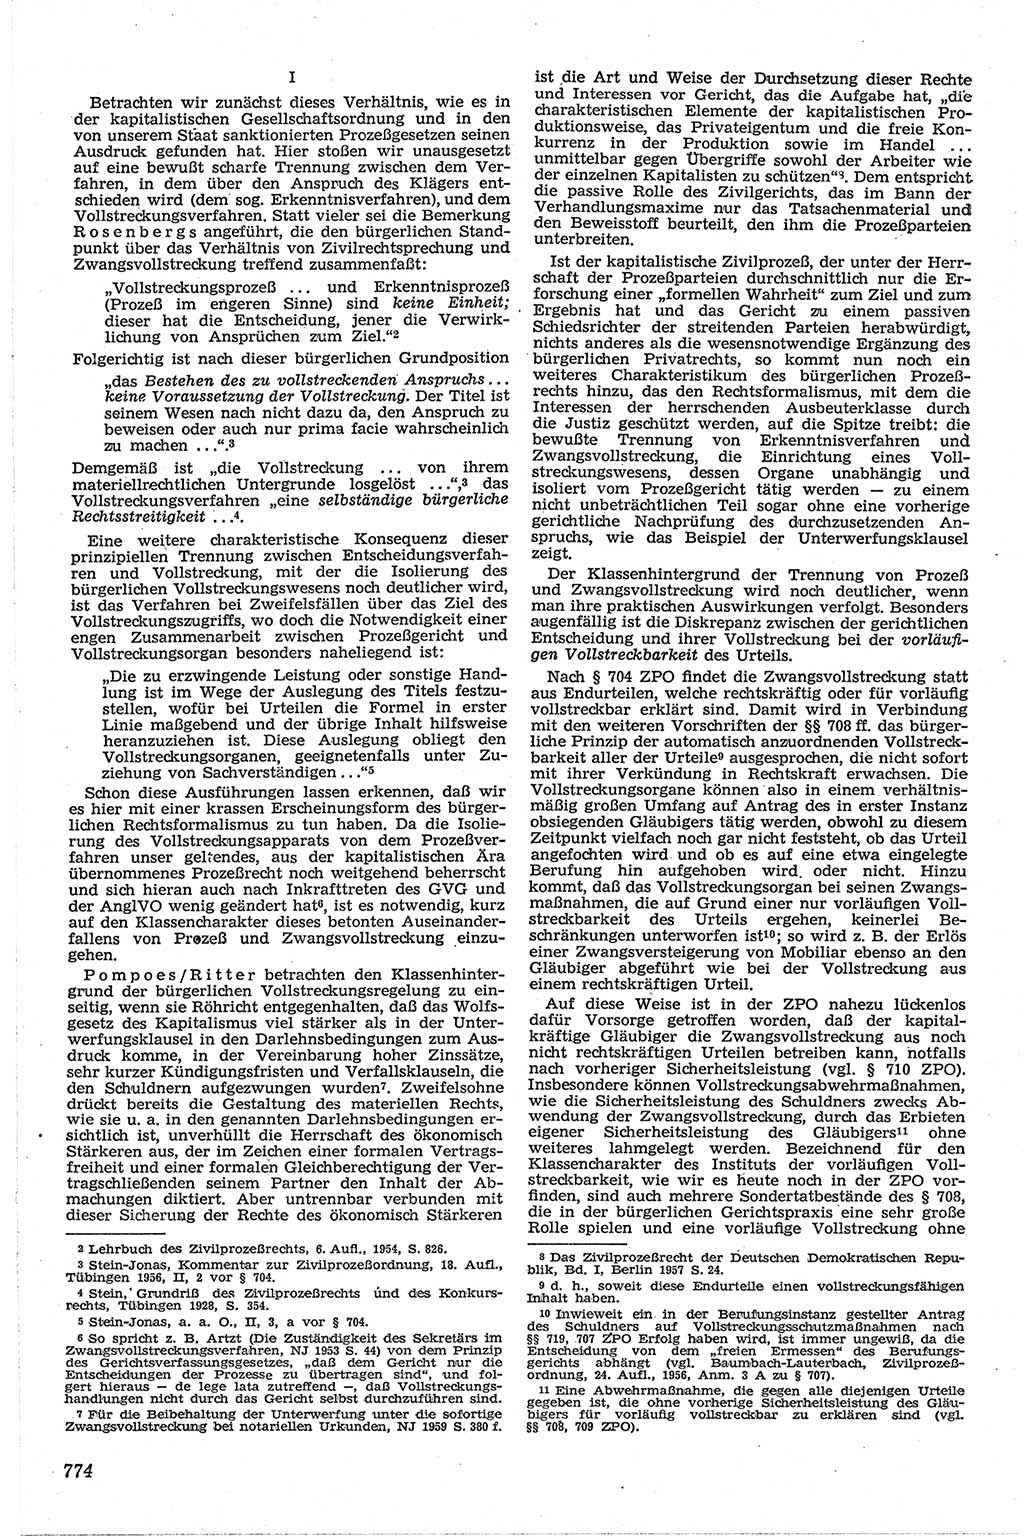 Neue Justiz (NJ), Zeitschrift für Recht und Rechtswissenschaft [Deutsche Demokratische Republik (DDR)], 13. Jahrgang 1959, Seite 774 (NJ DDR 1959, S. 774)